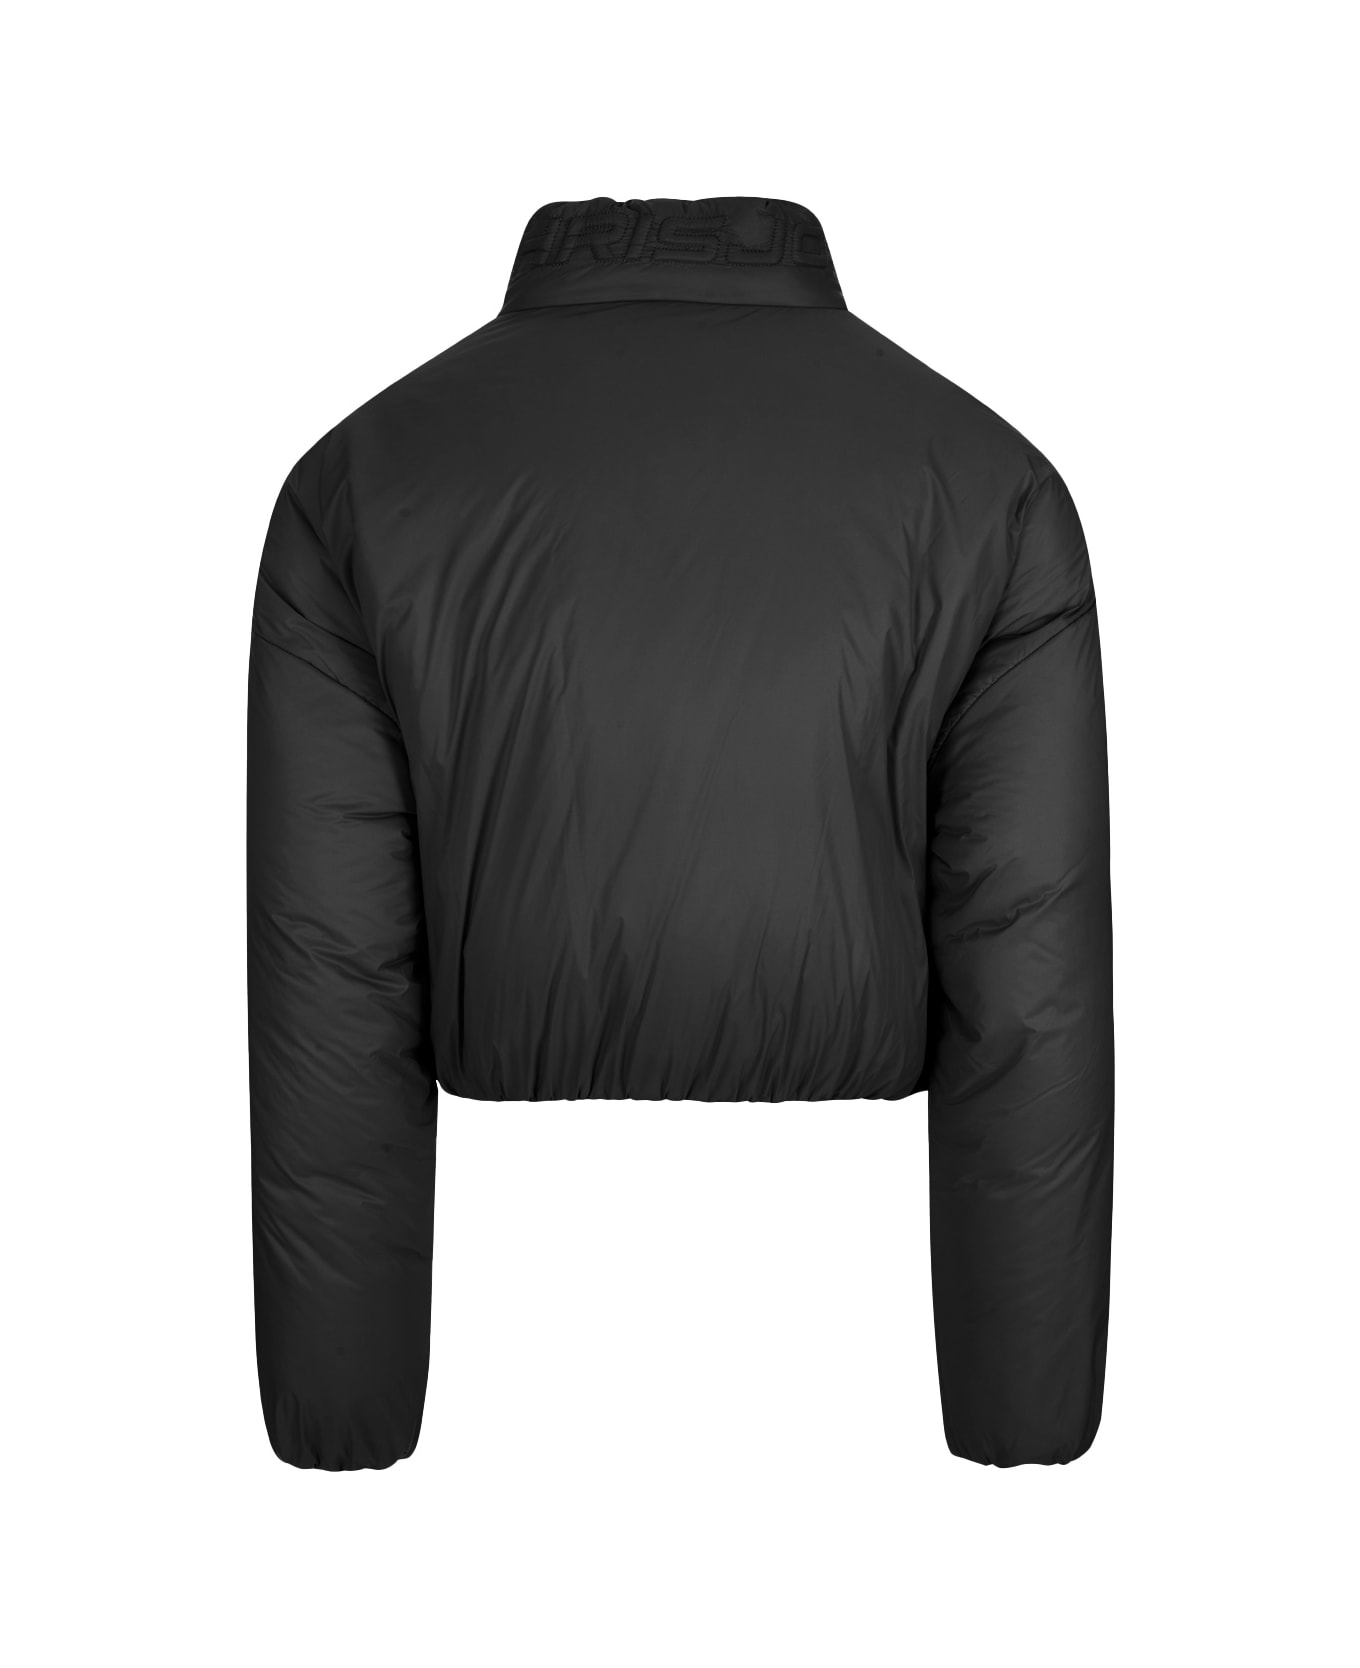 Khrisjoy Puff Joy Cropped Jacket In Black - Black